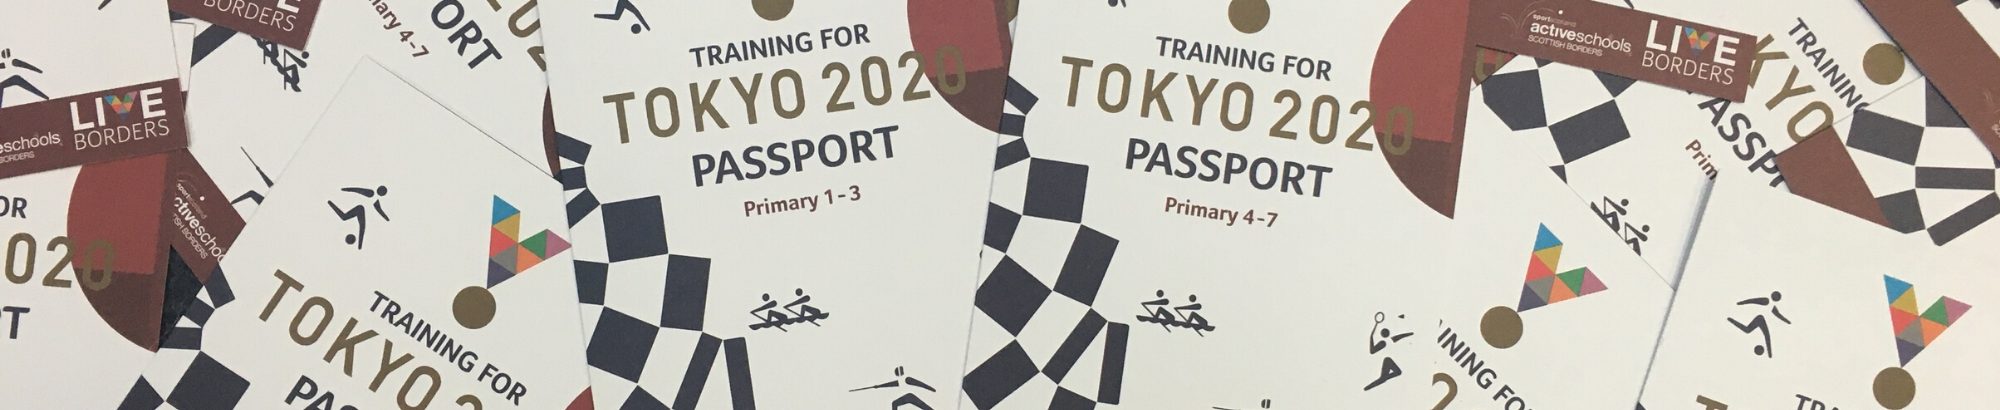 Tokyo passport